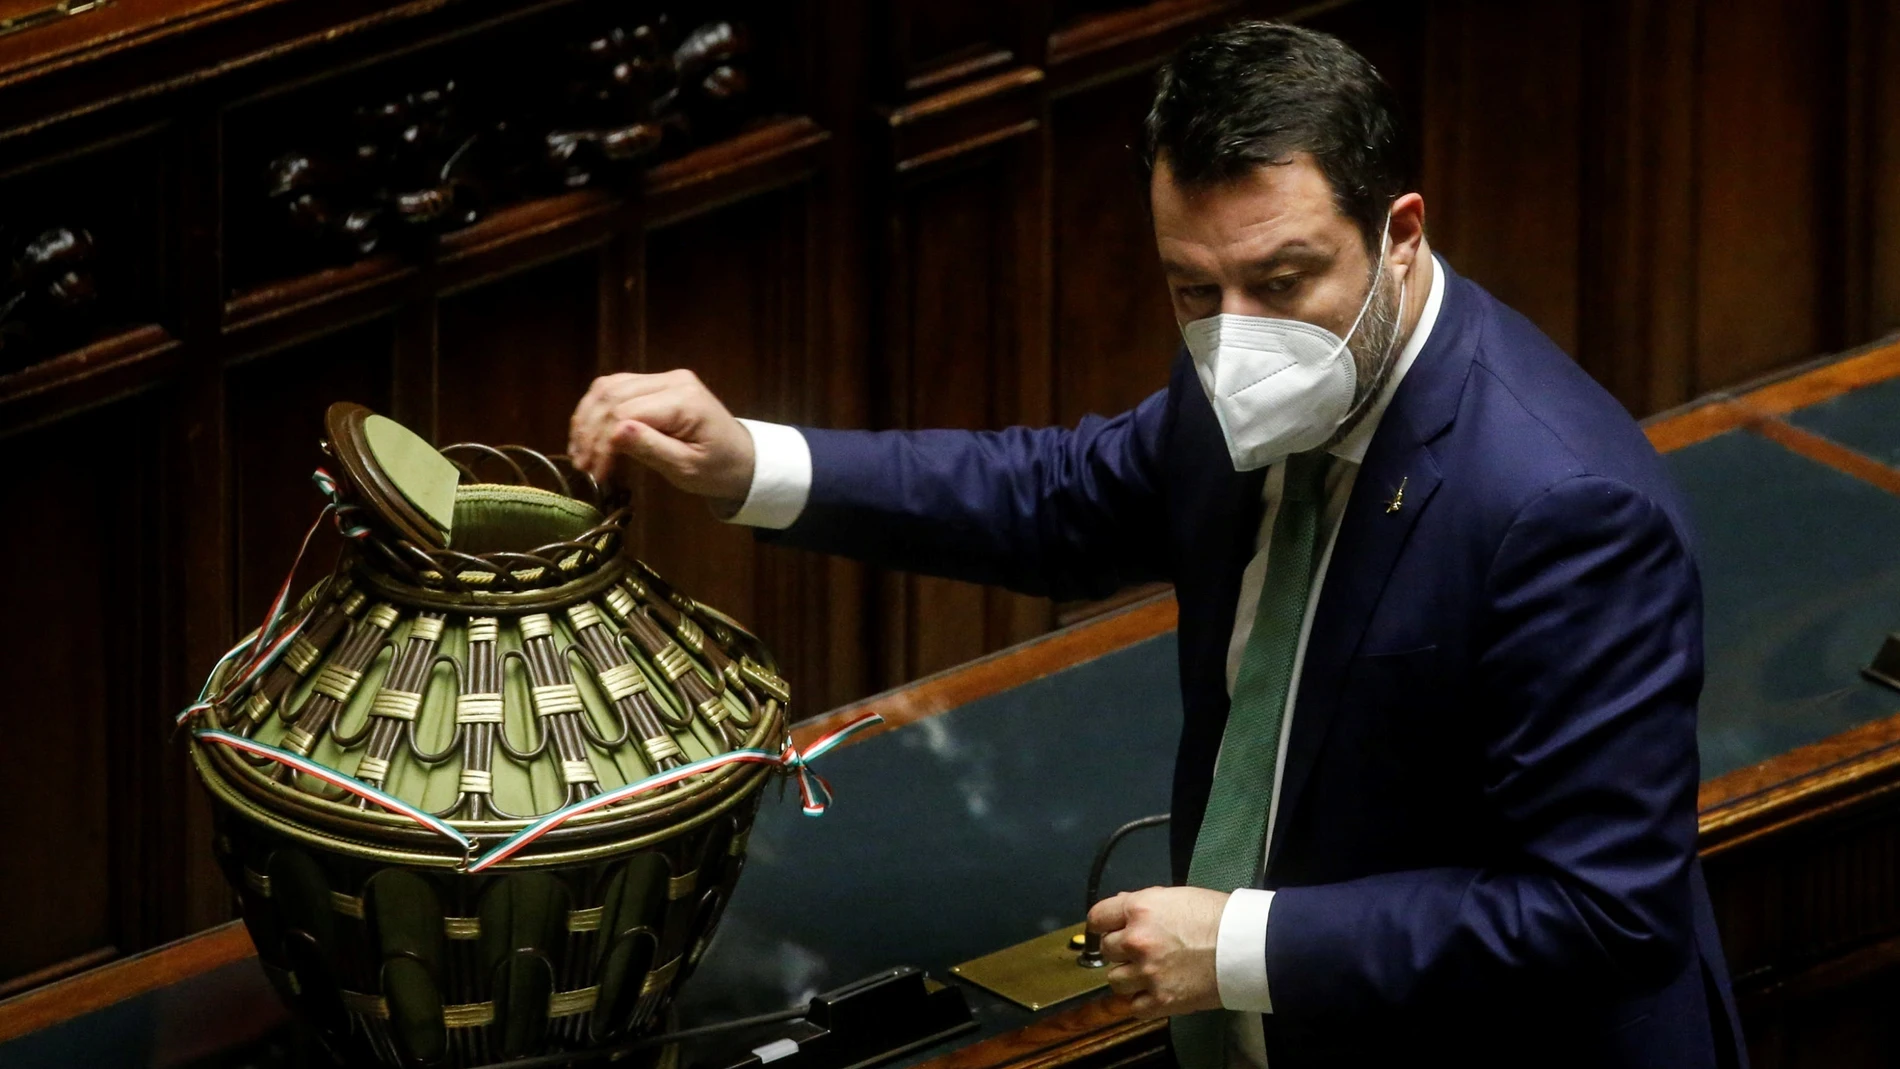 El líder de la Liga, Matteo Salvini, tras votar el sábado en la elección presidencial